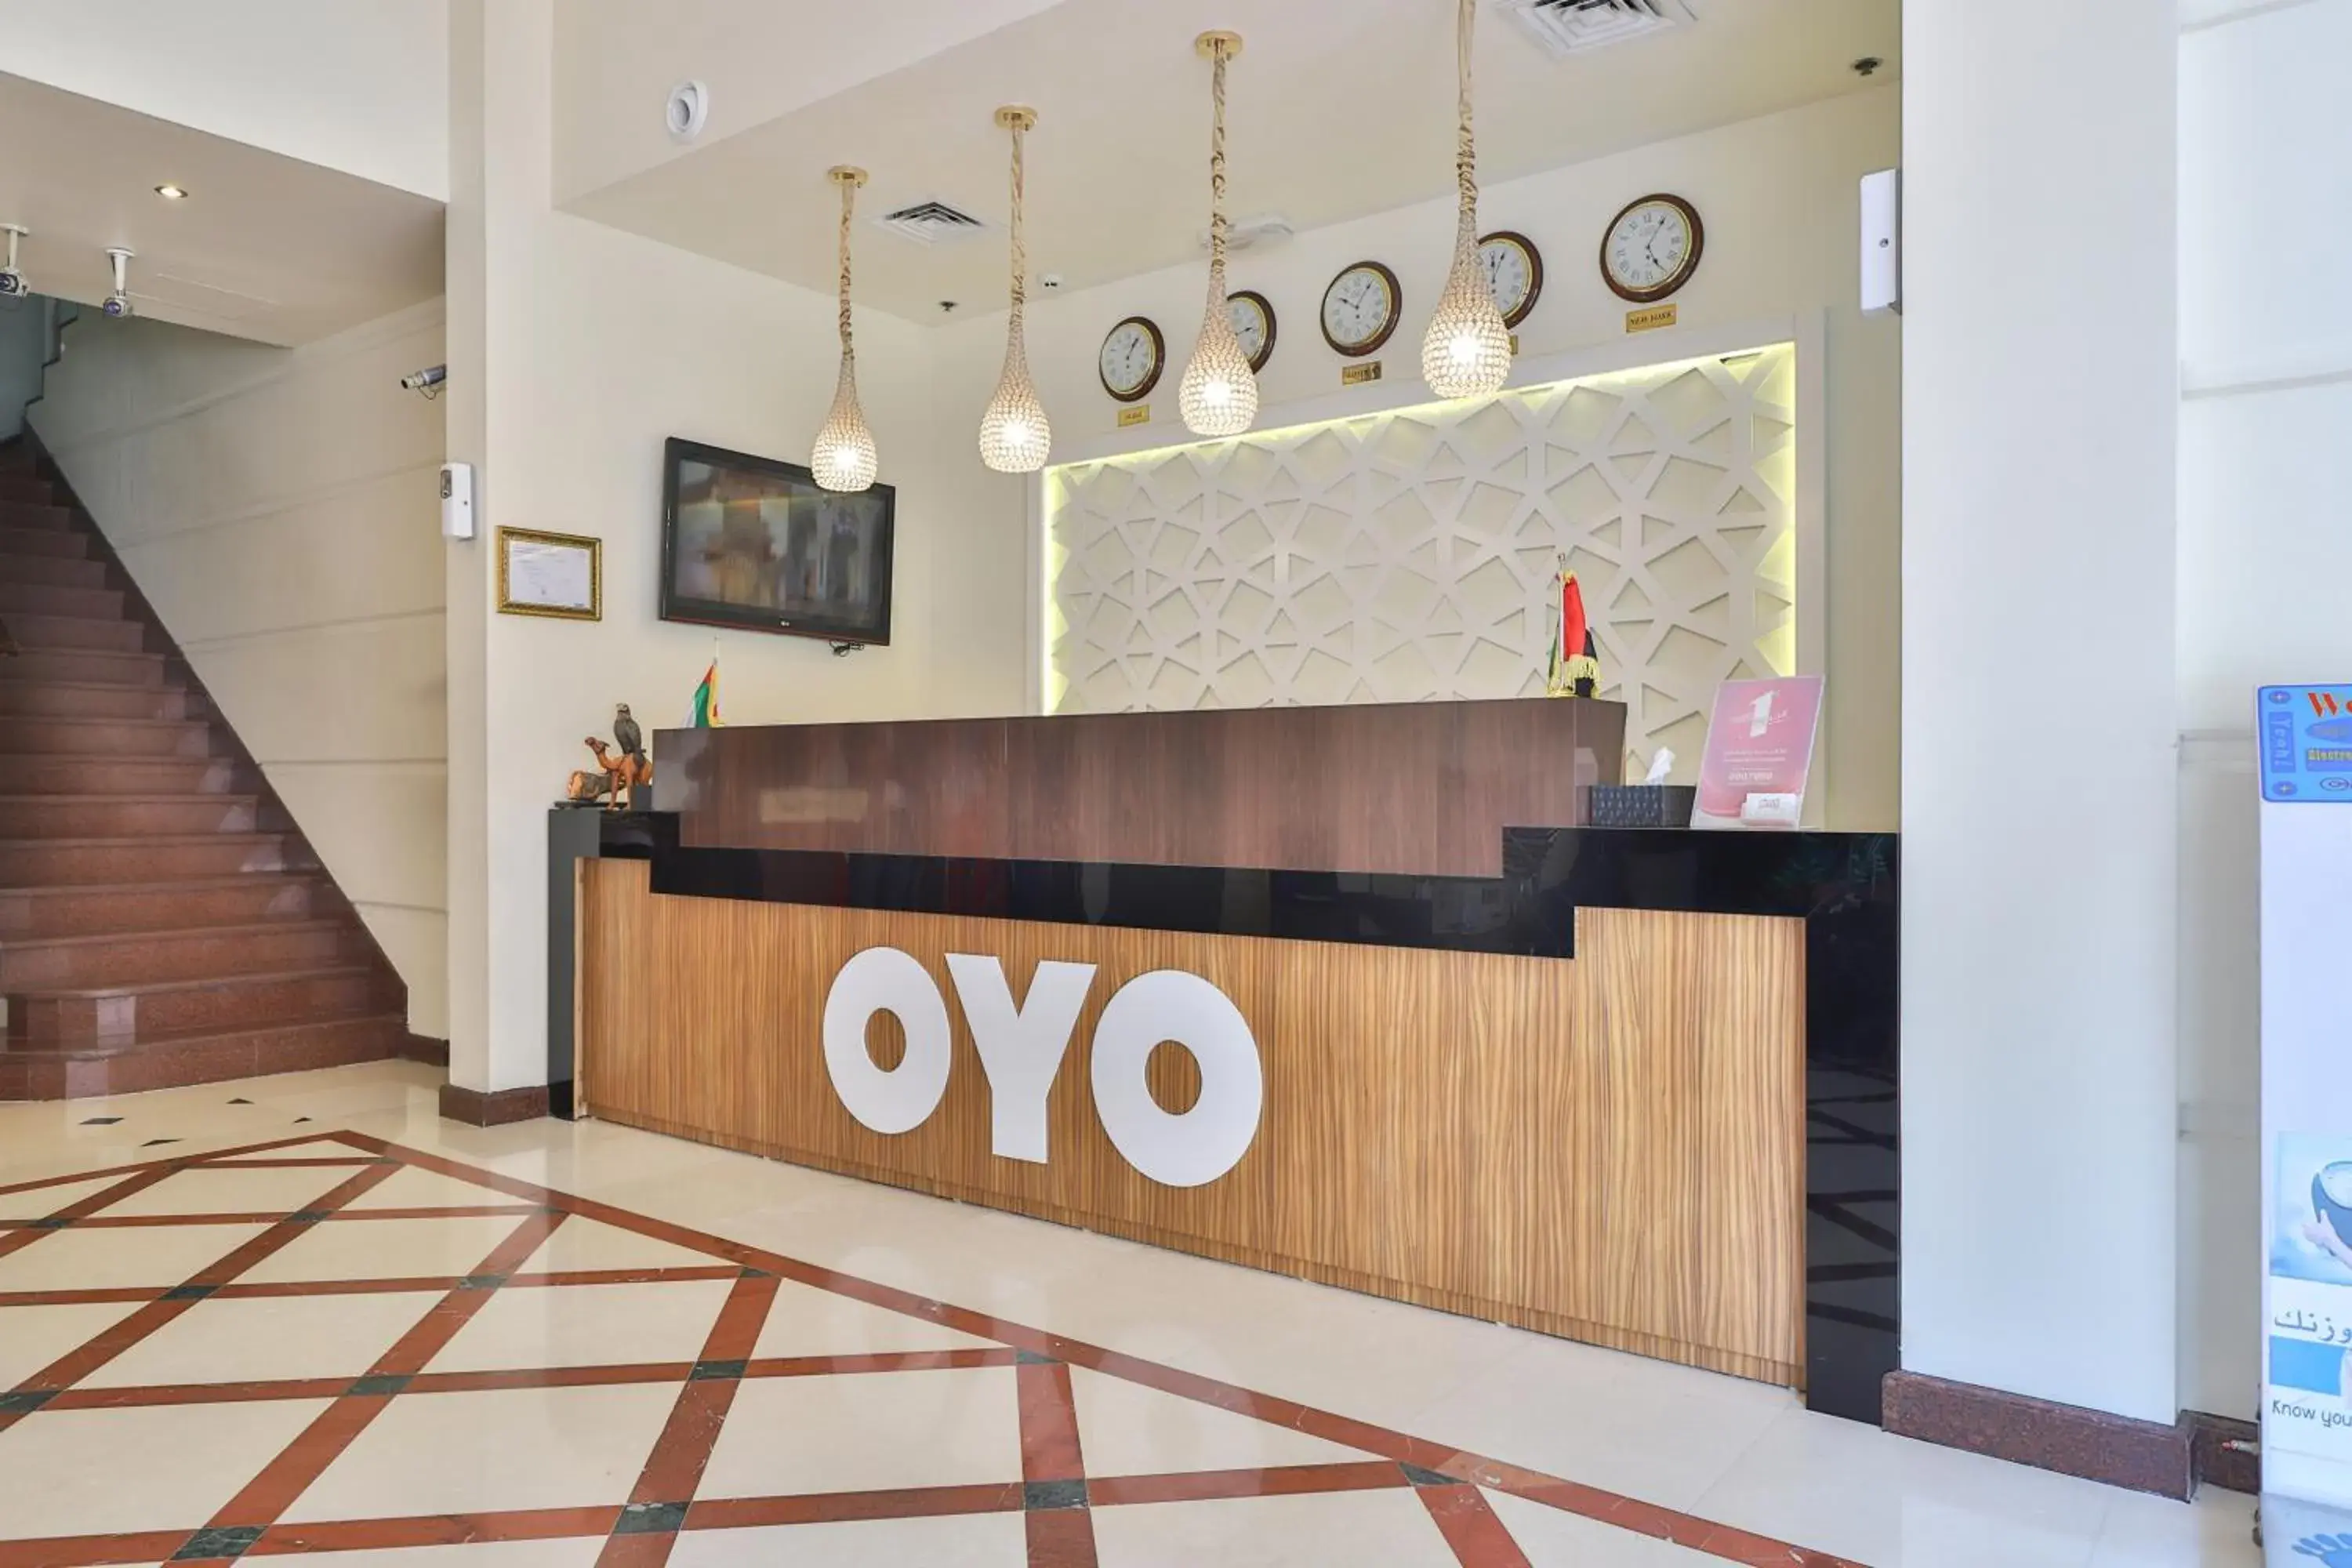 Lobby or reception, Lobby/Reception in OYO 367 Eureka Hotel